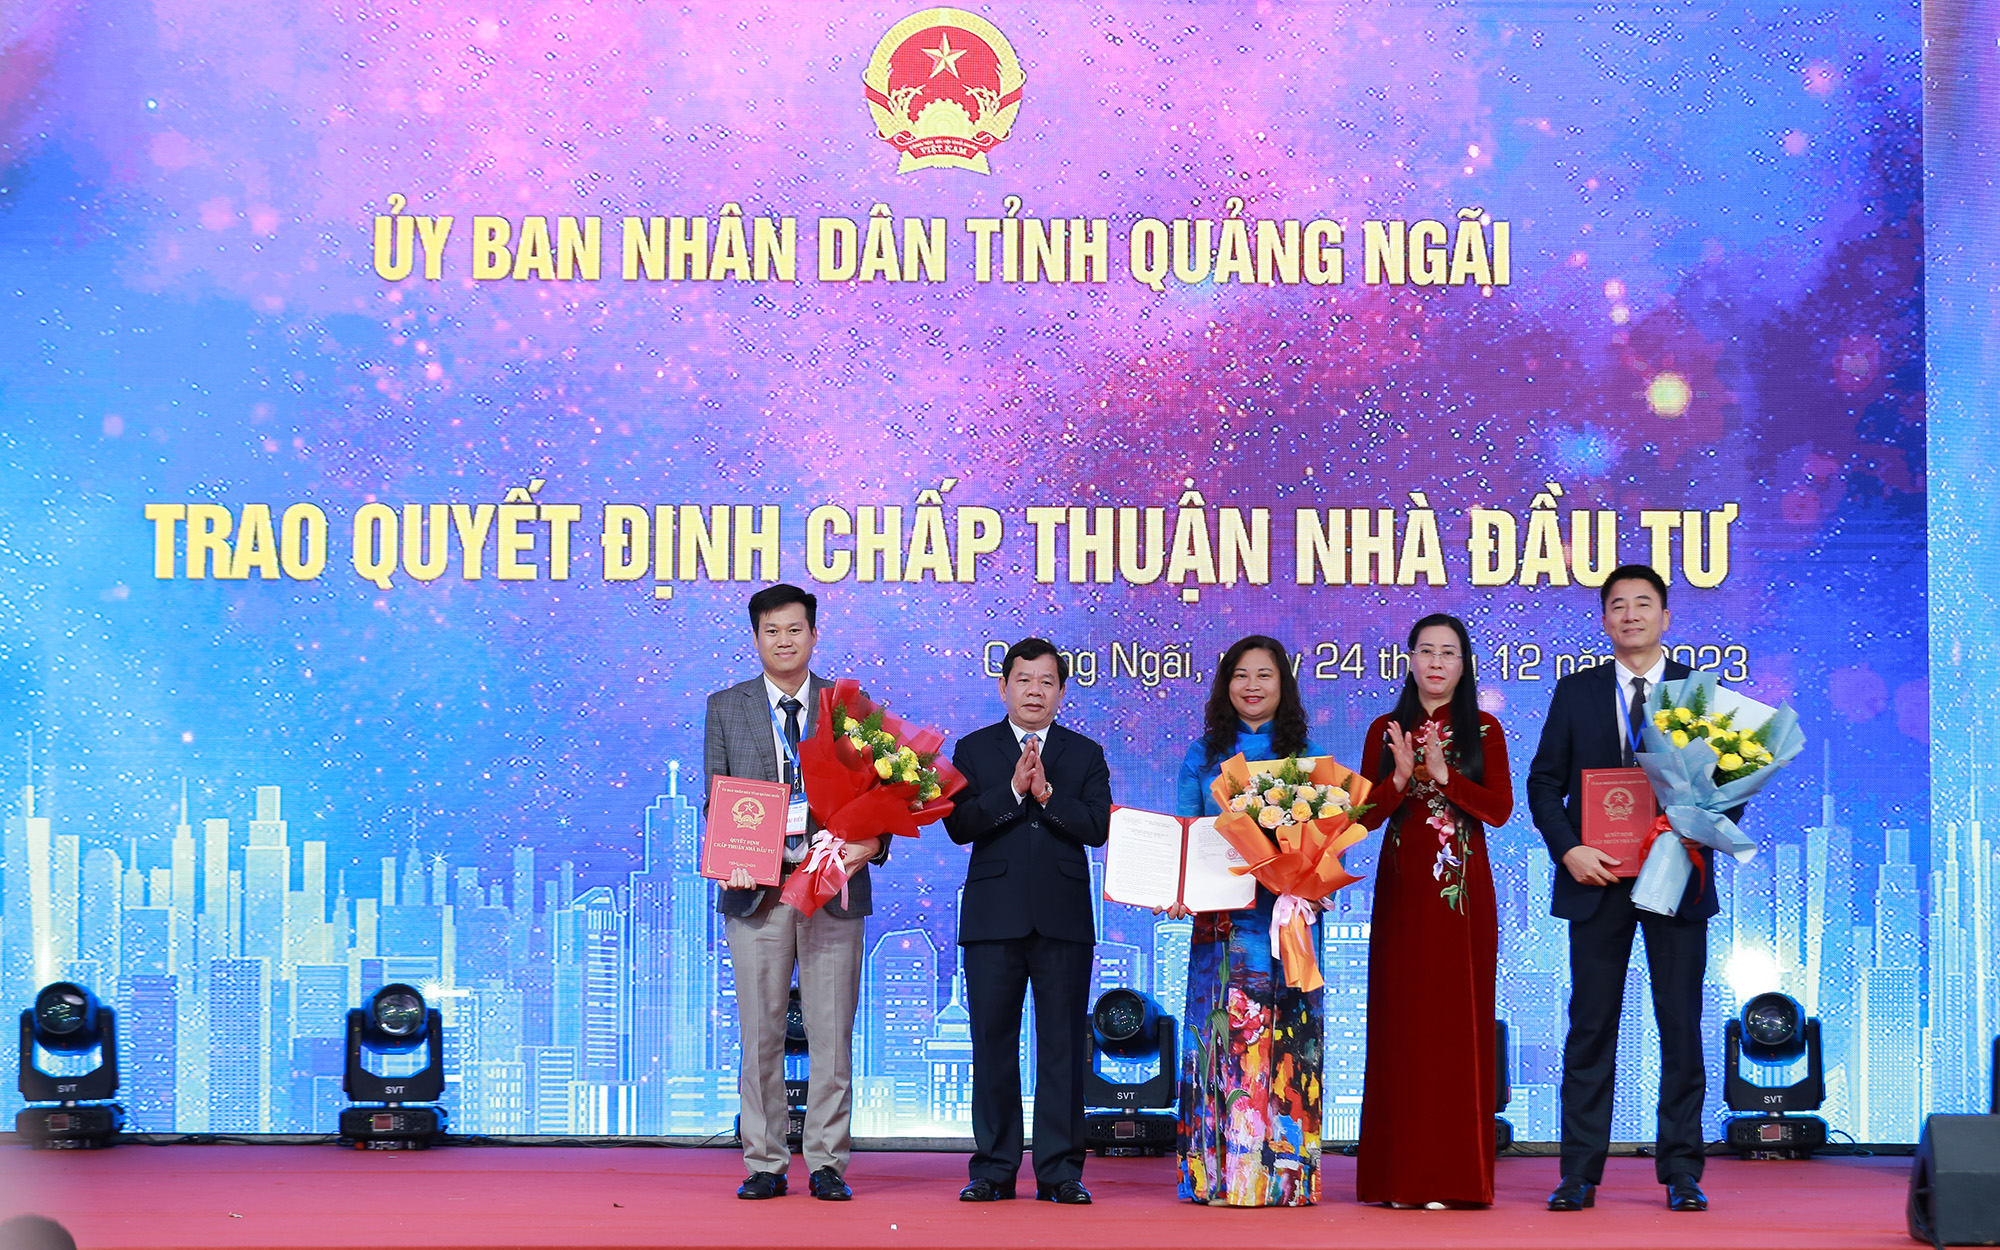 Lãnh đạo tỉnh Quảng Ngãi trao quyết định chấp thuận nhà đầu tư, chấp thuận chủ trương đầu tư cho một số dự án lớn tại địa phương - Ảnh: VGP/Minh Khôi